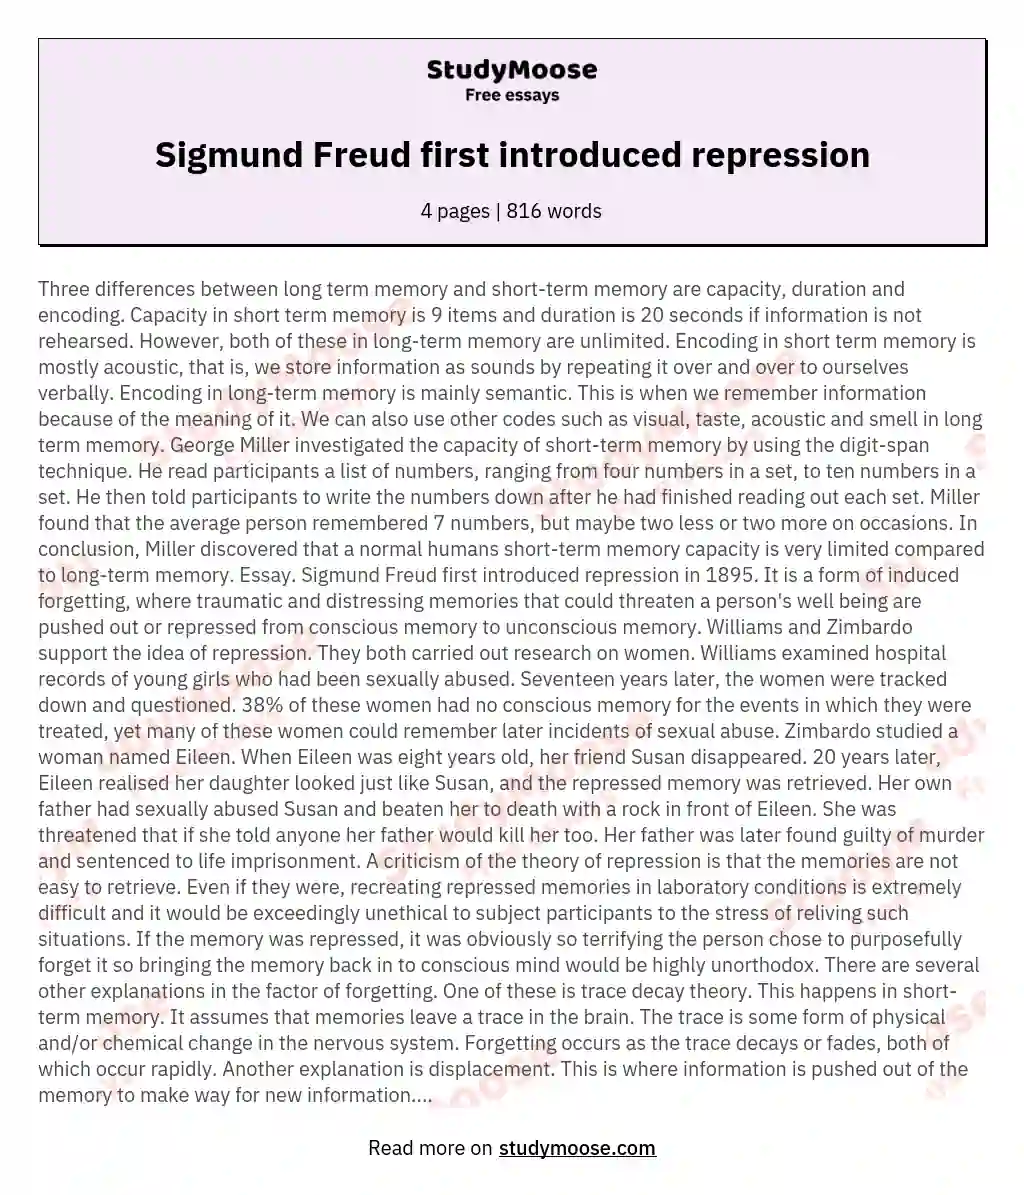 Sigmund Freud first introduced repression essay